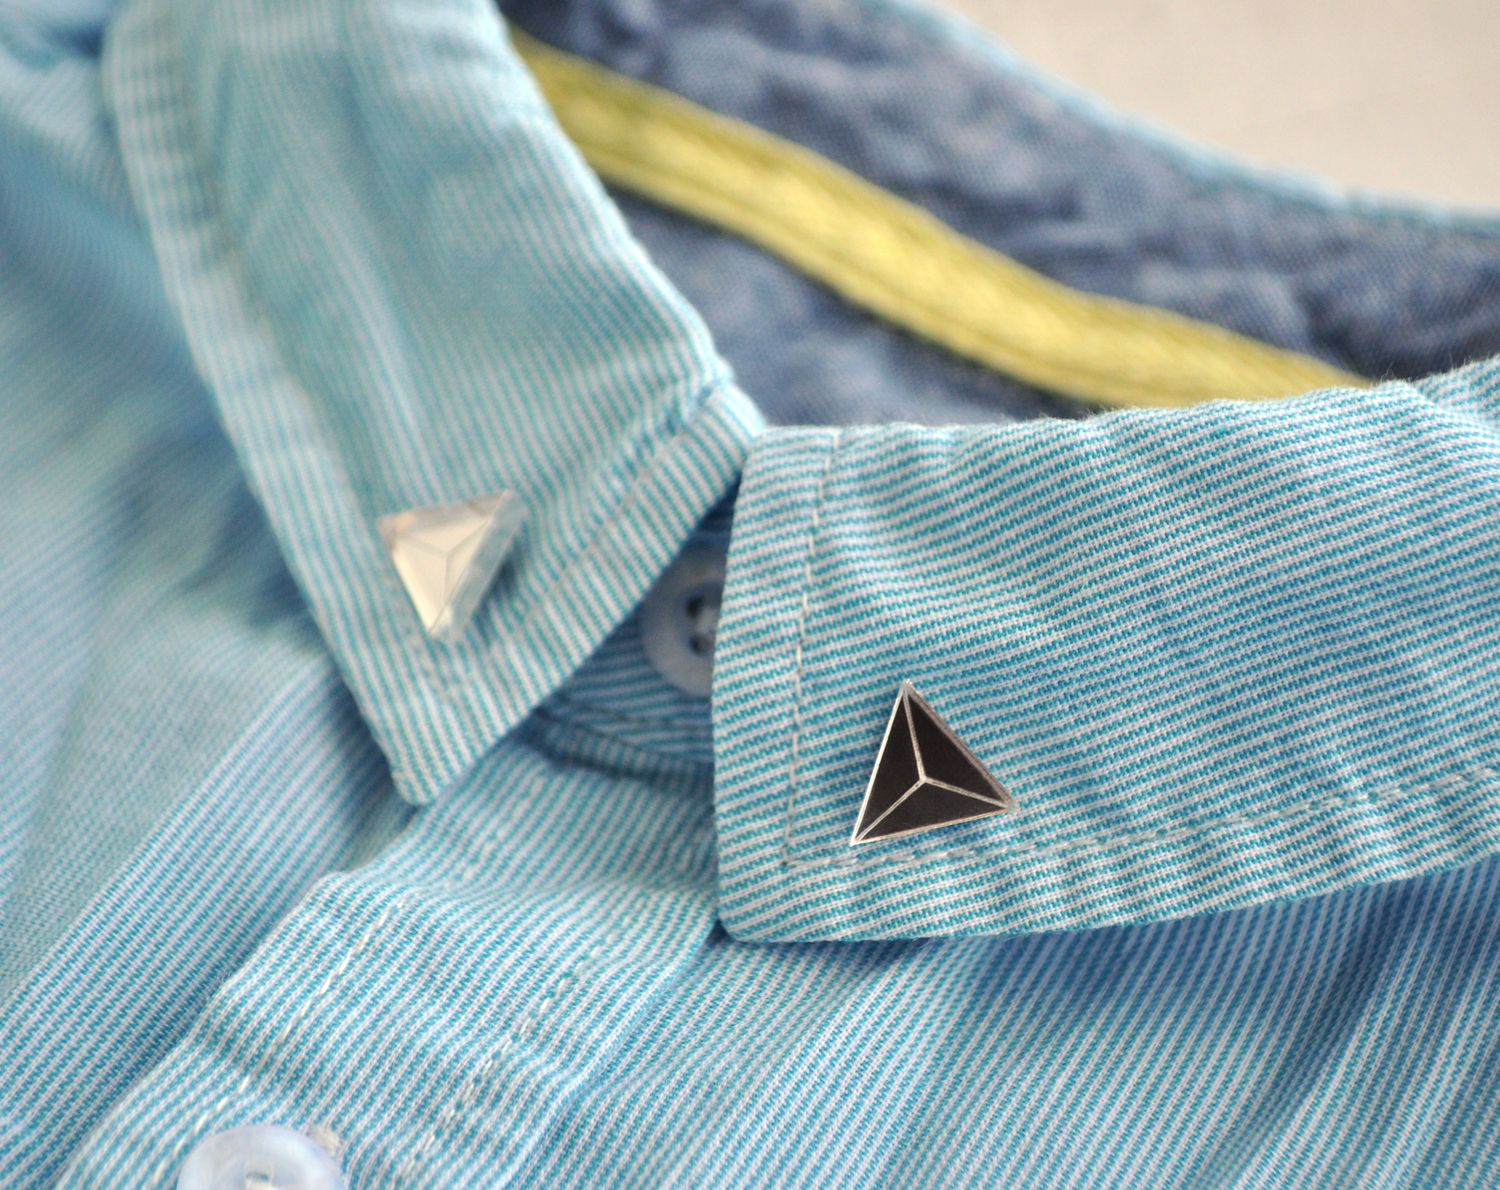 Треугольники граненые зеркальные броши на воротник рубашки ручной работы купить